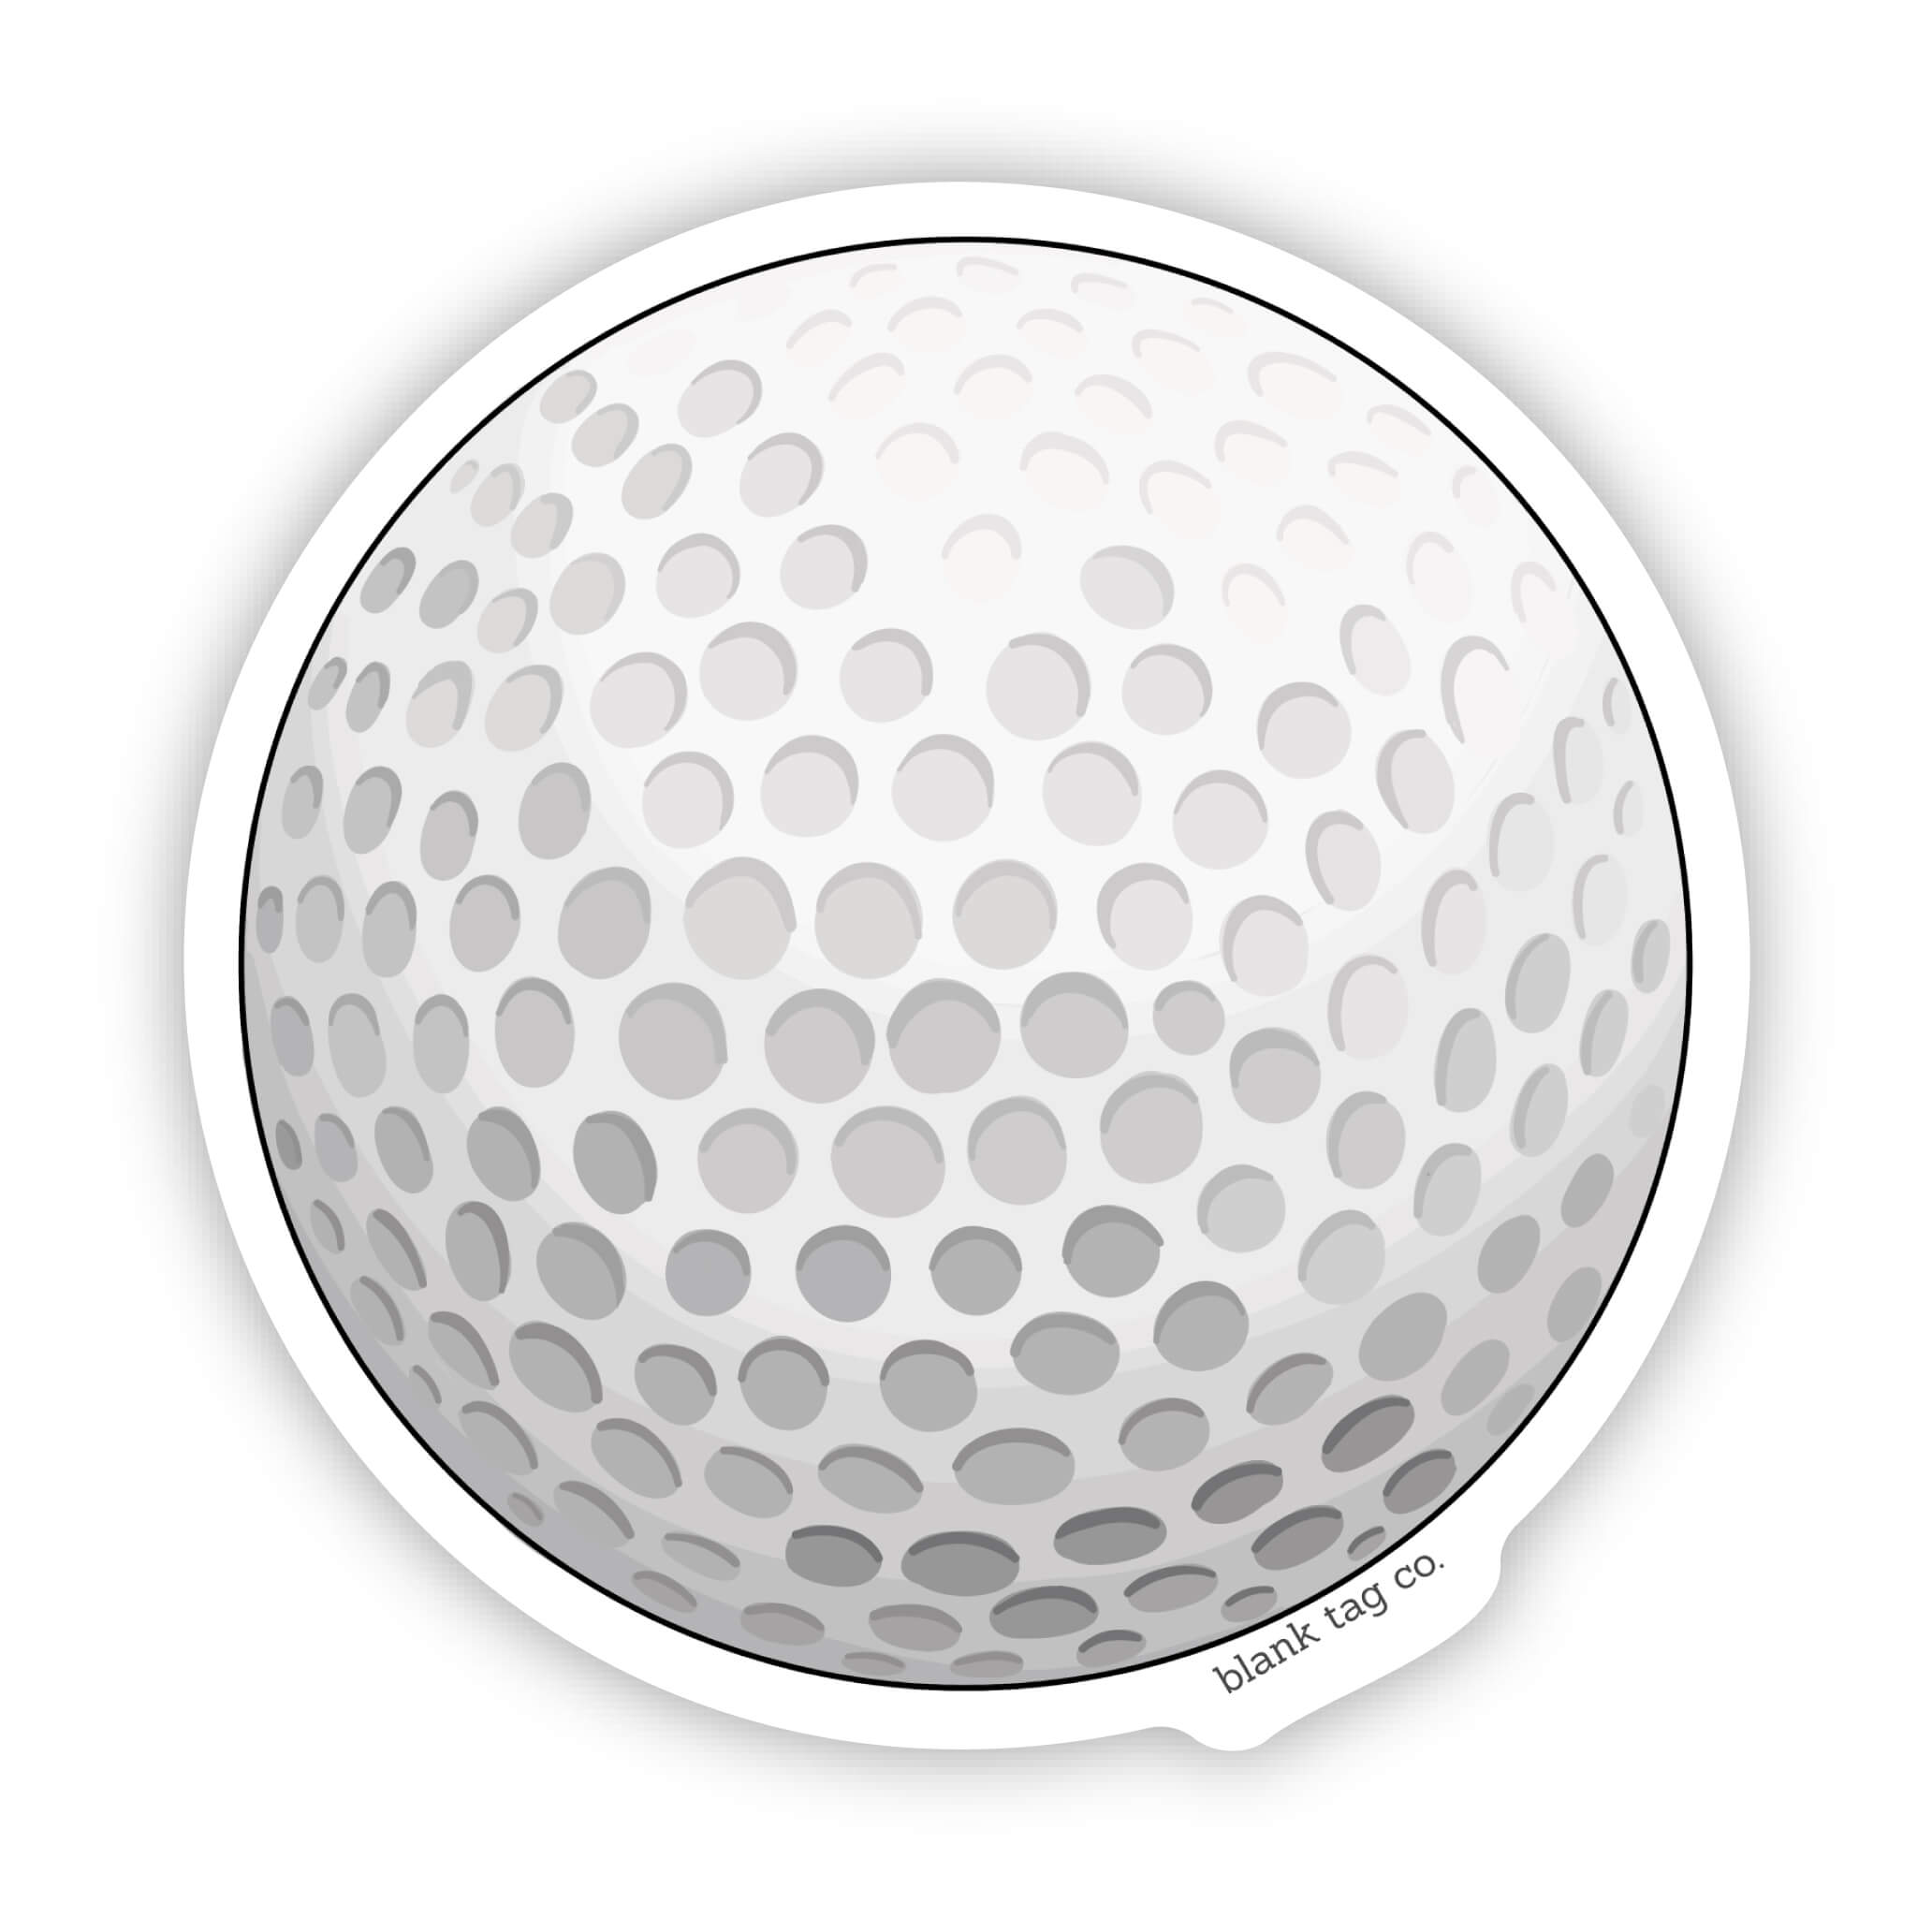 The Golf Ball Sticker